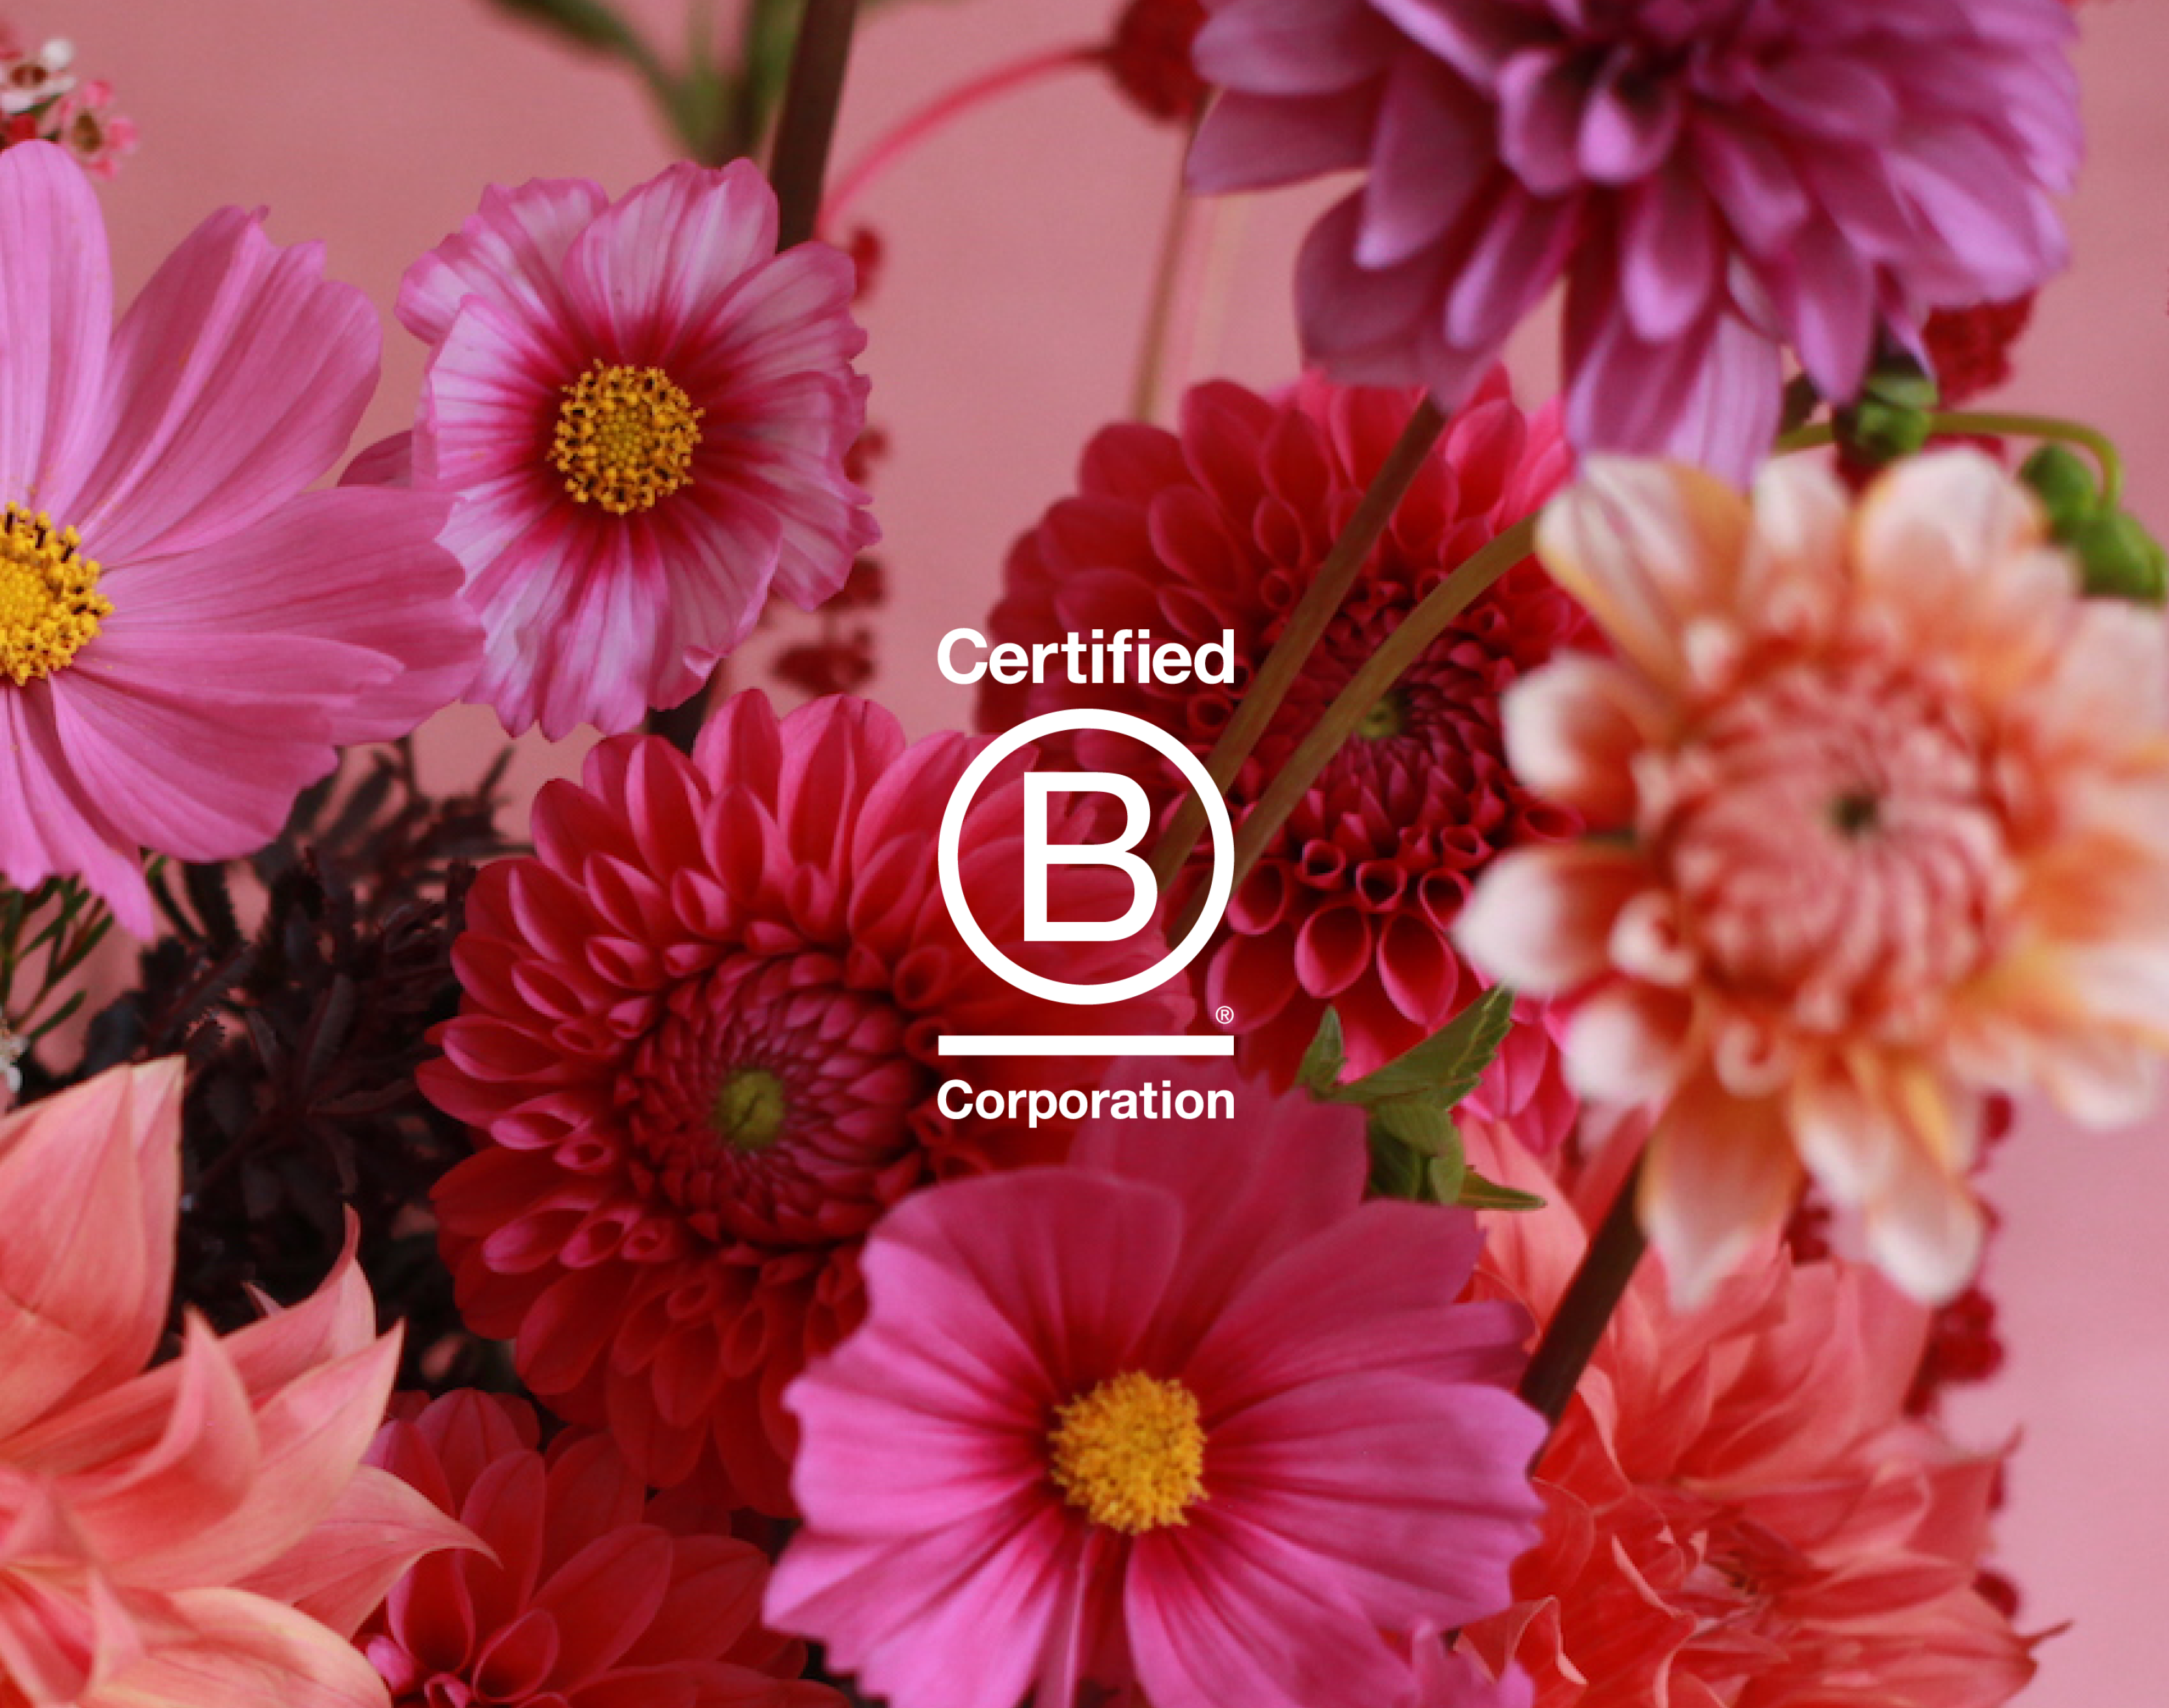 Florada florist Sydney Certified B Corp